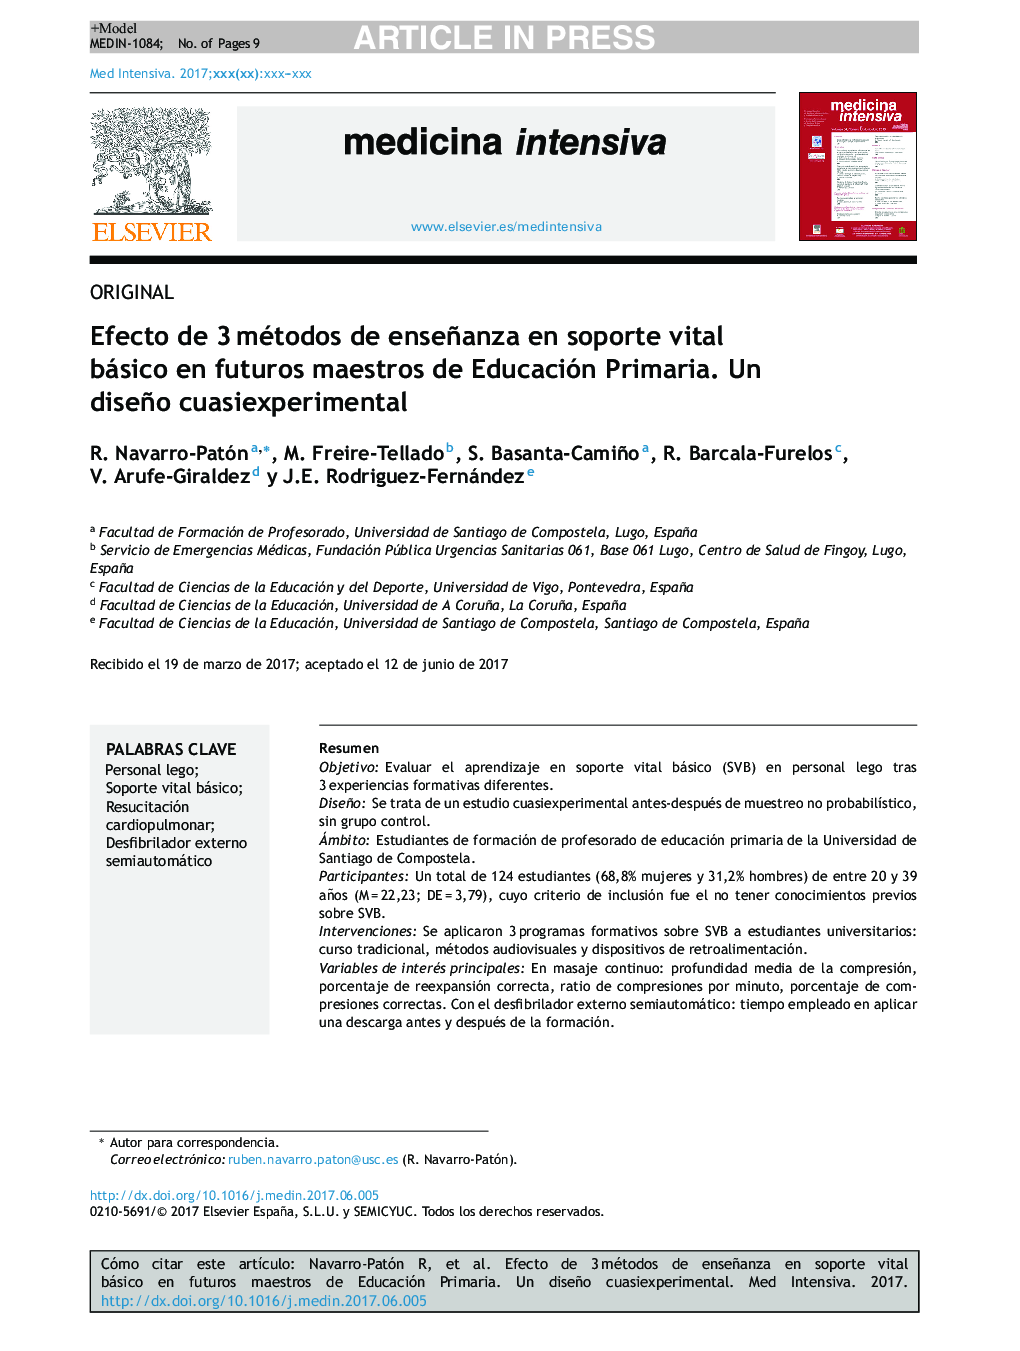 Efecto de 3Â métodos de enseñanza en soporte vital básico en futuros maestros de Educación Primaria. Un diseño cuasiexperimental